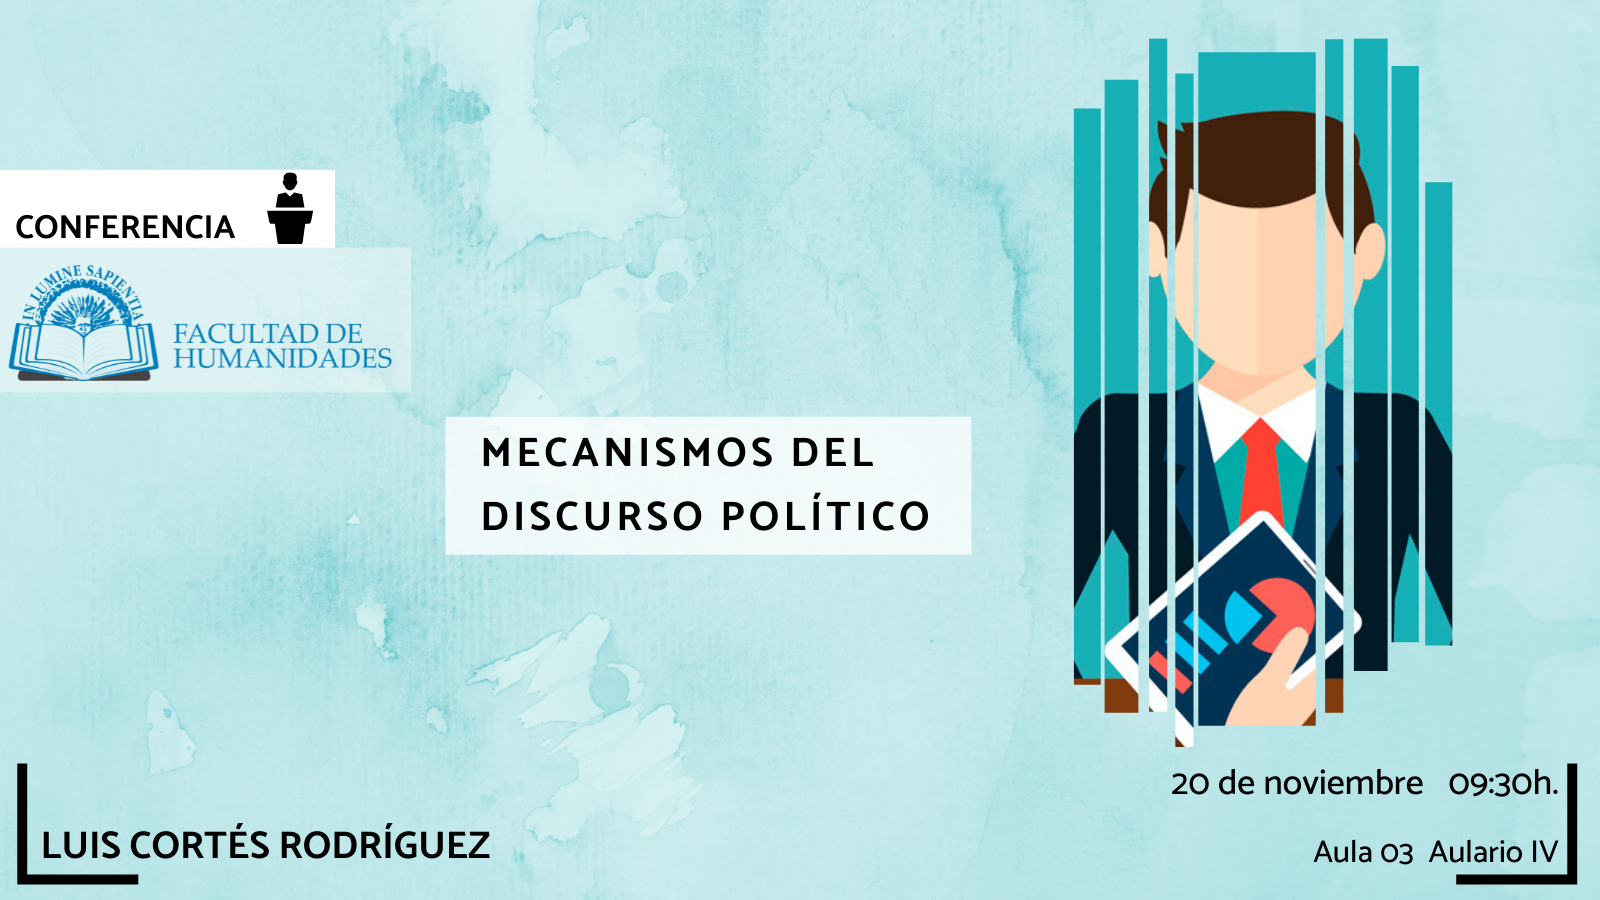 La Facultad de Humanidades y Susana Ridao Rodrigo organizan la actividad titulada "Mecanismos del discurso político‘’.